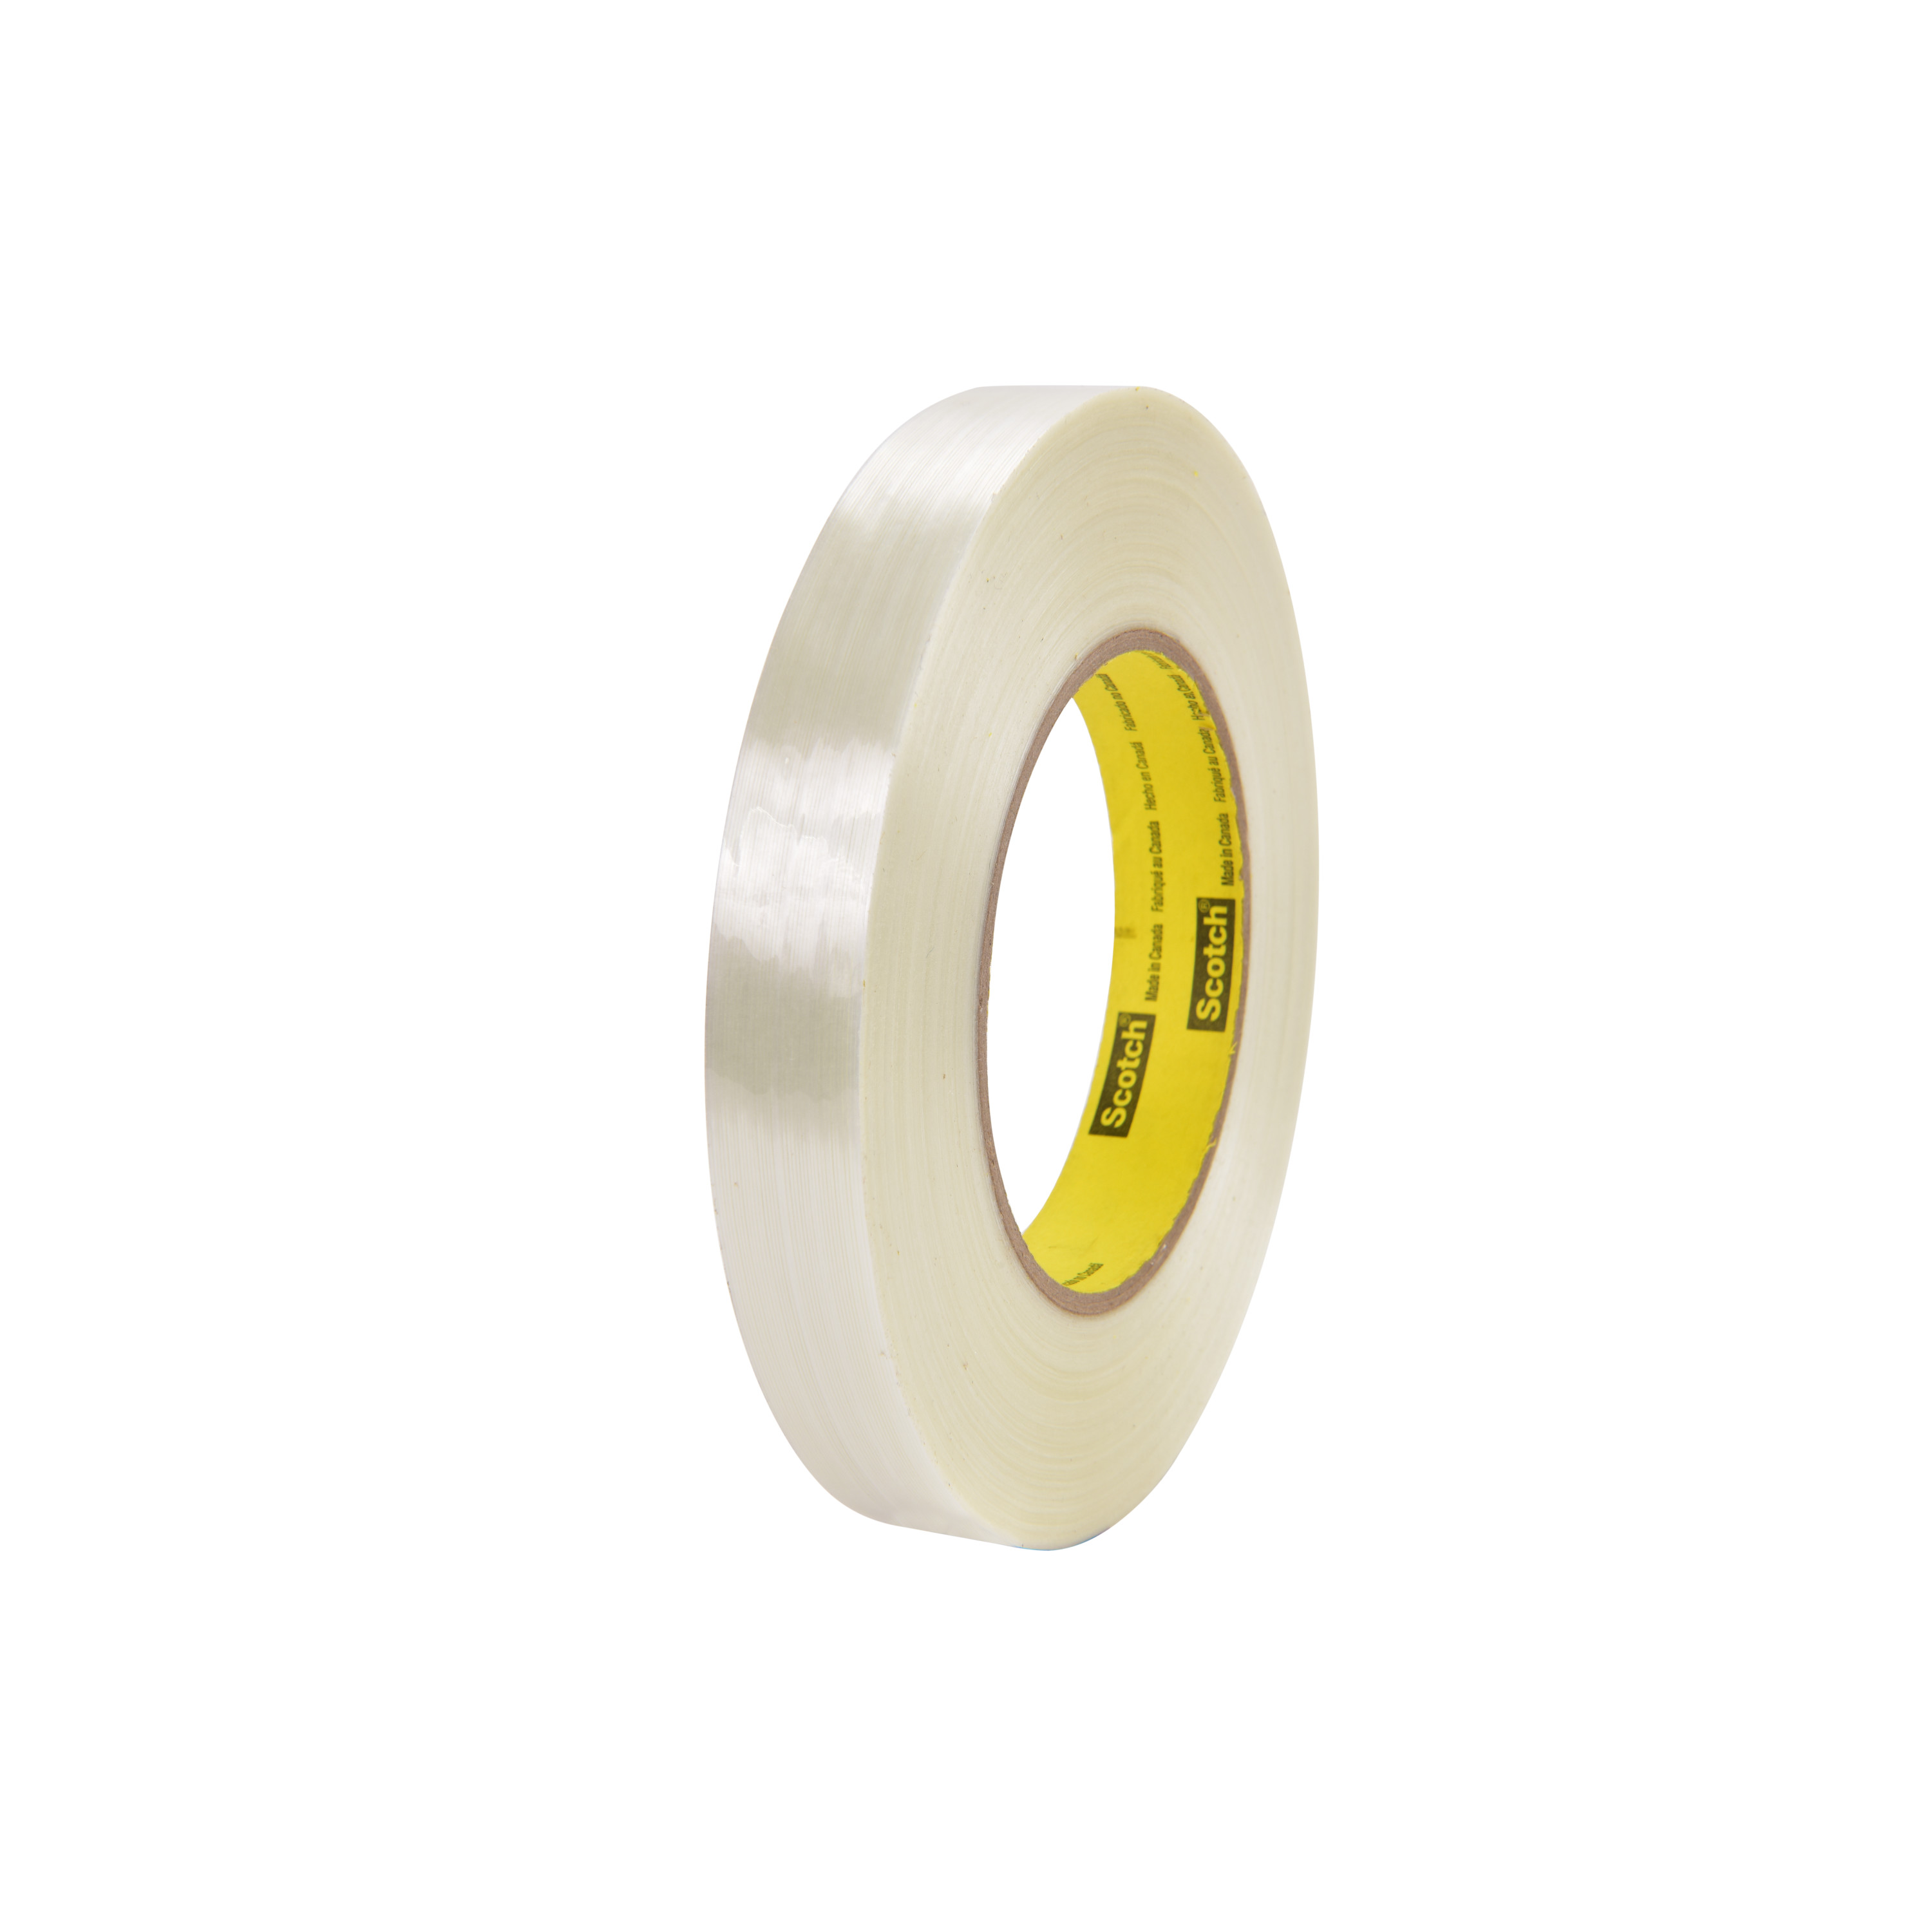 Scotch® Filament Tape 8988, Clear, 18 mm x 550 m, 6.9 mil, 8 rolls per
case